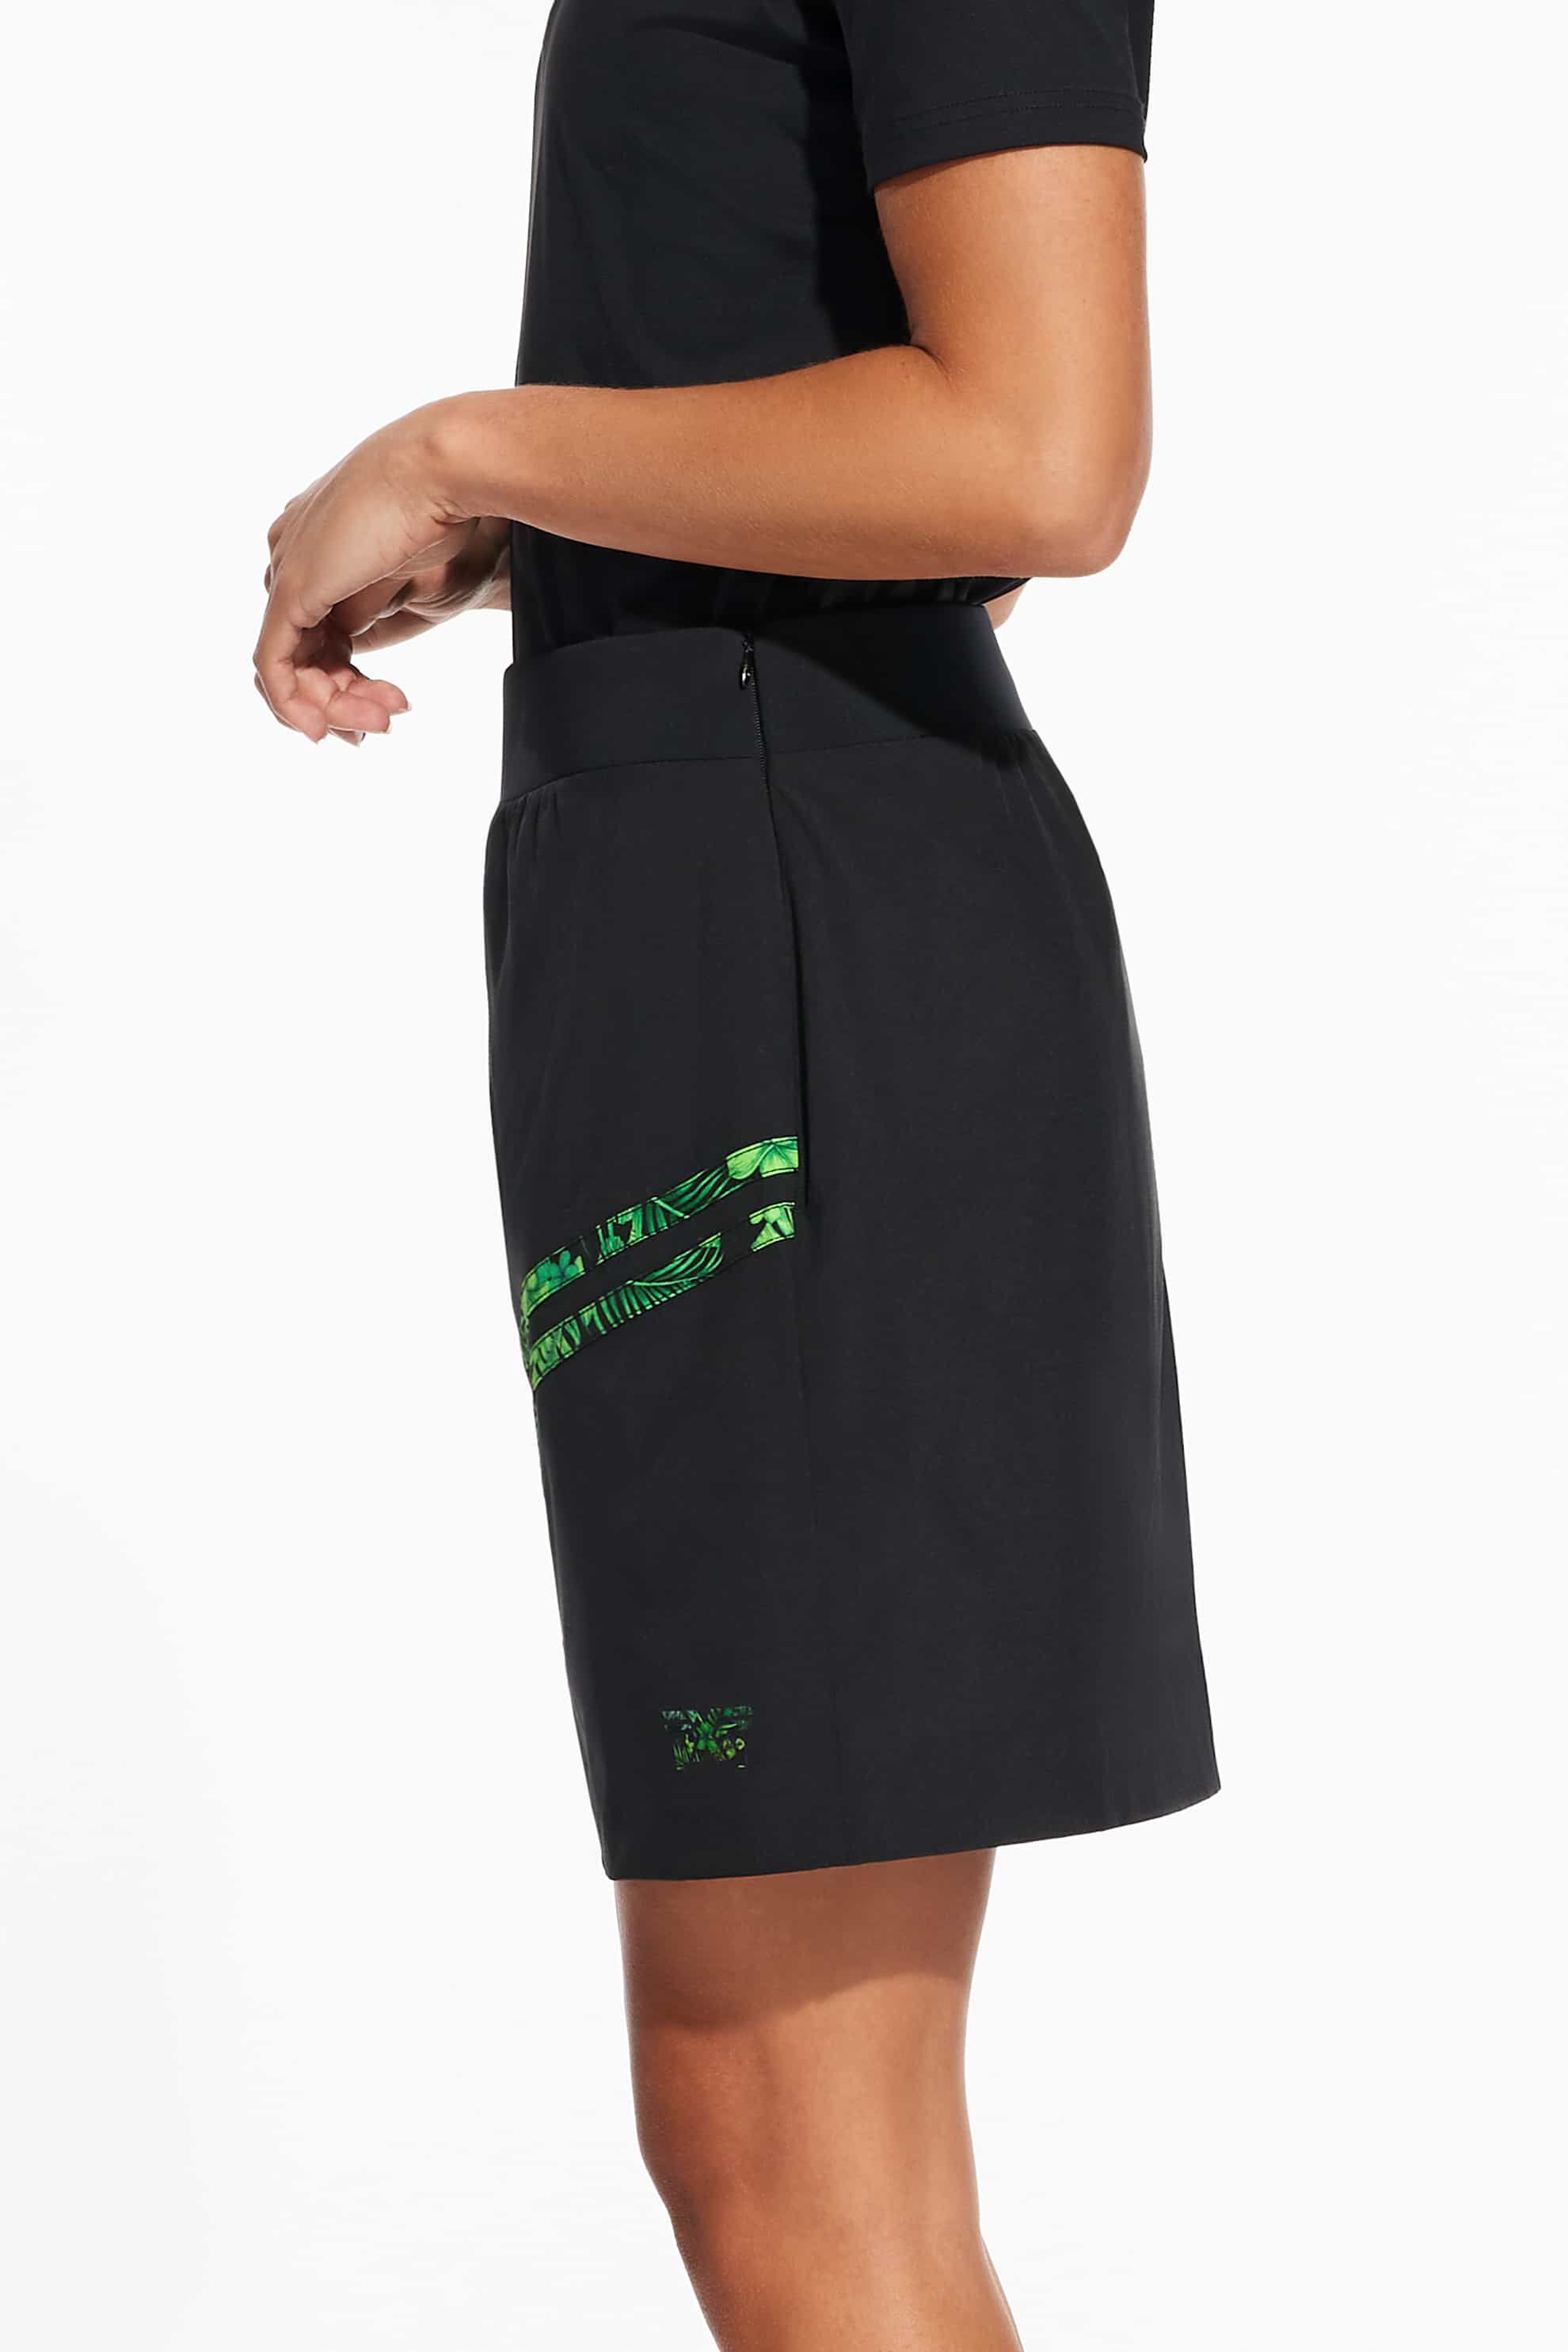 Aloha 23 Skirt | Shop the Highest Quality Golf Apparel, Gear ...